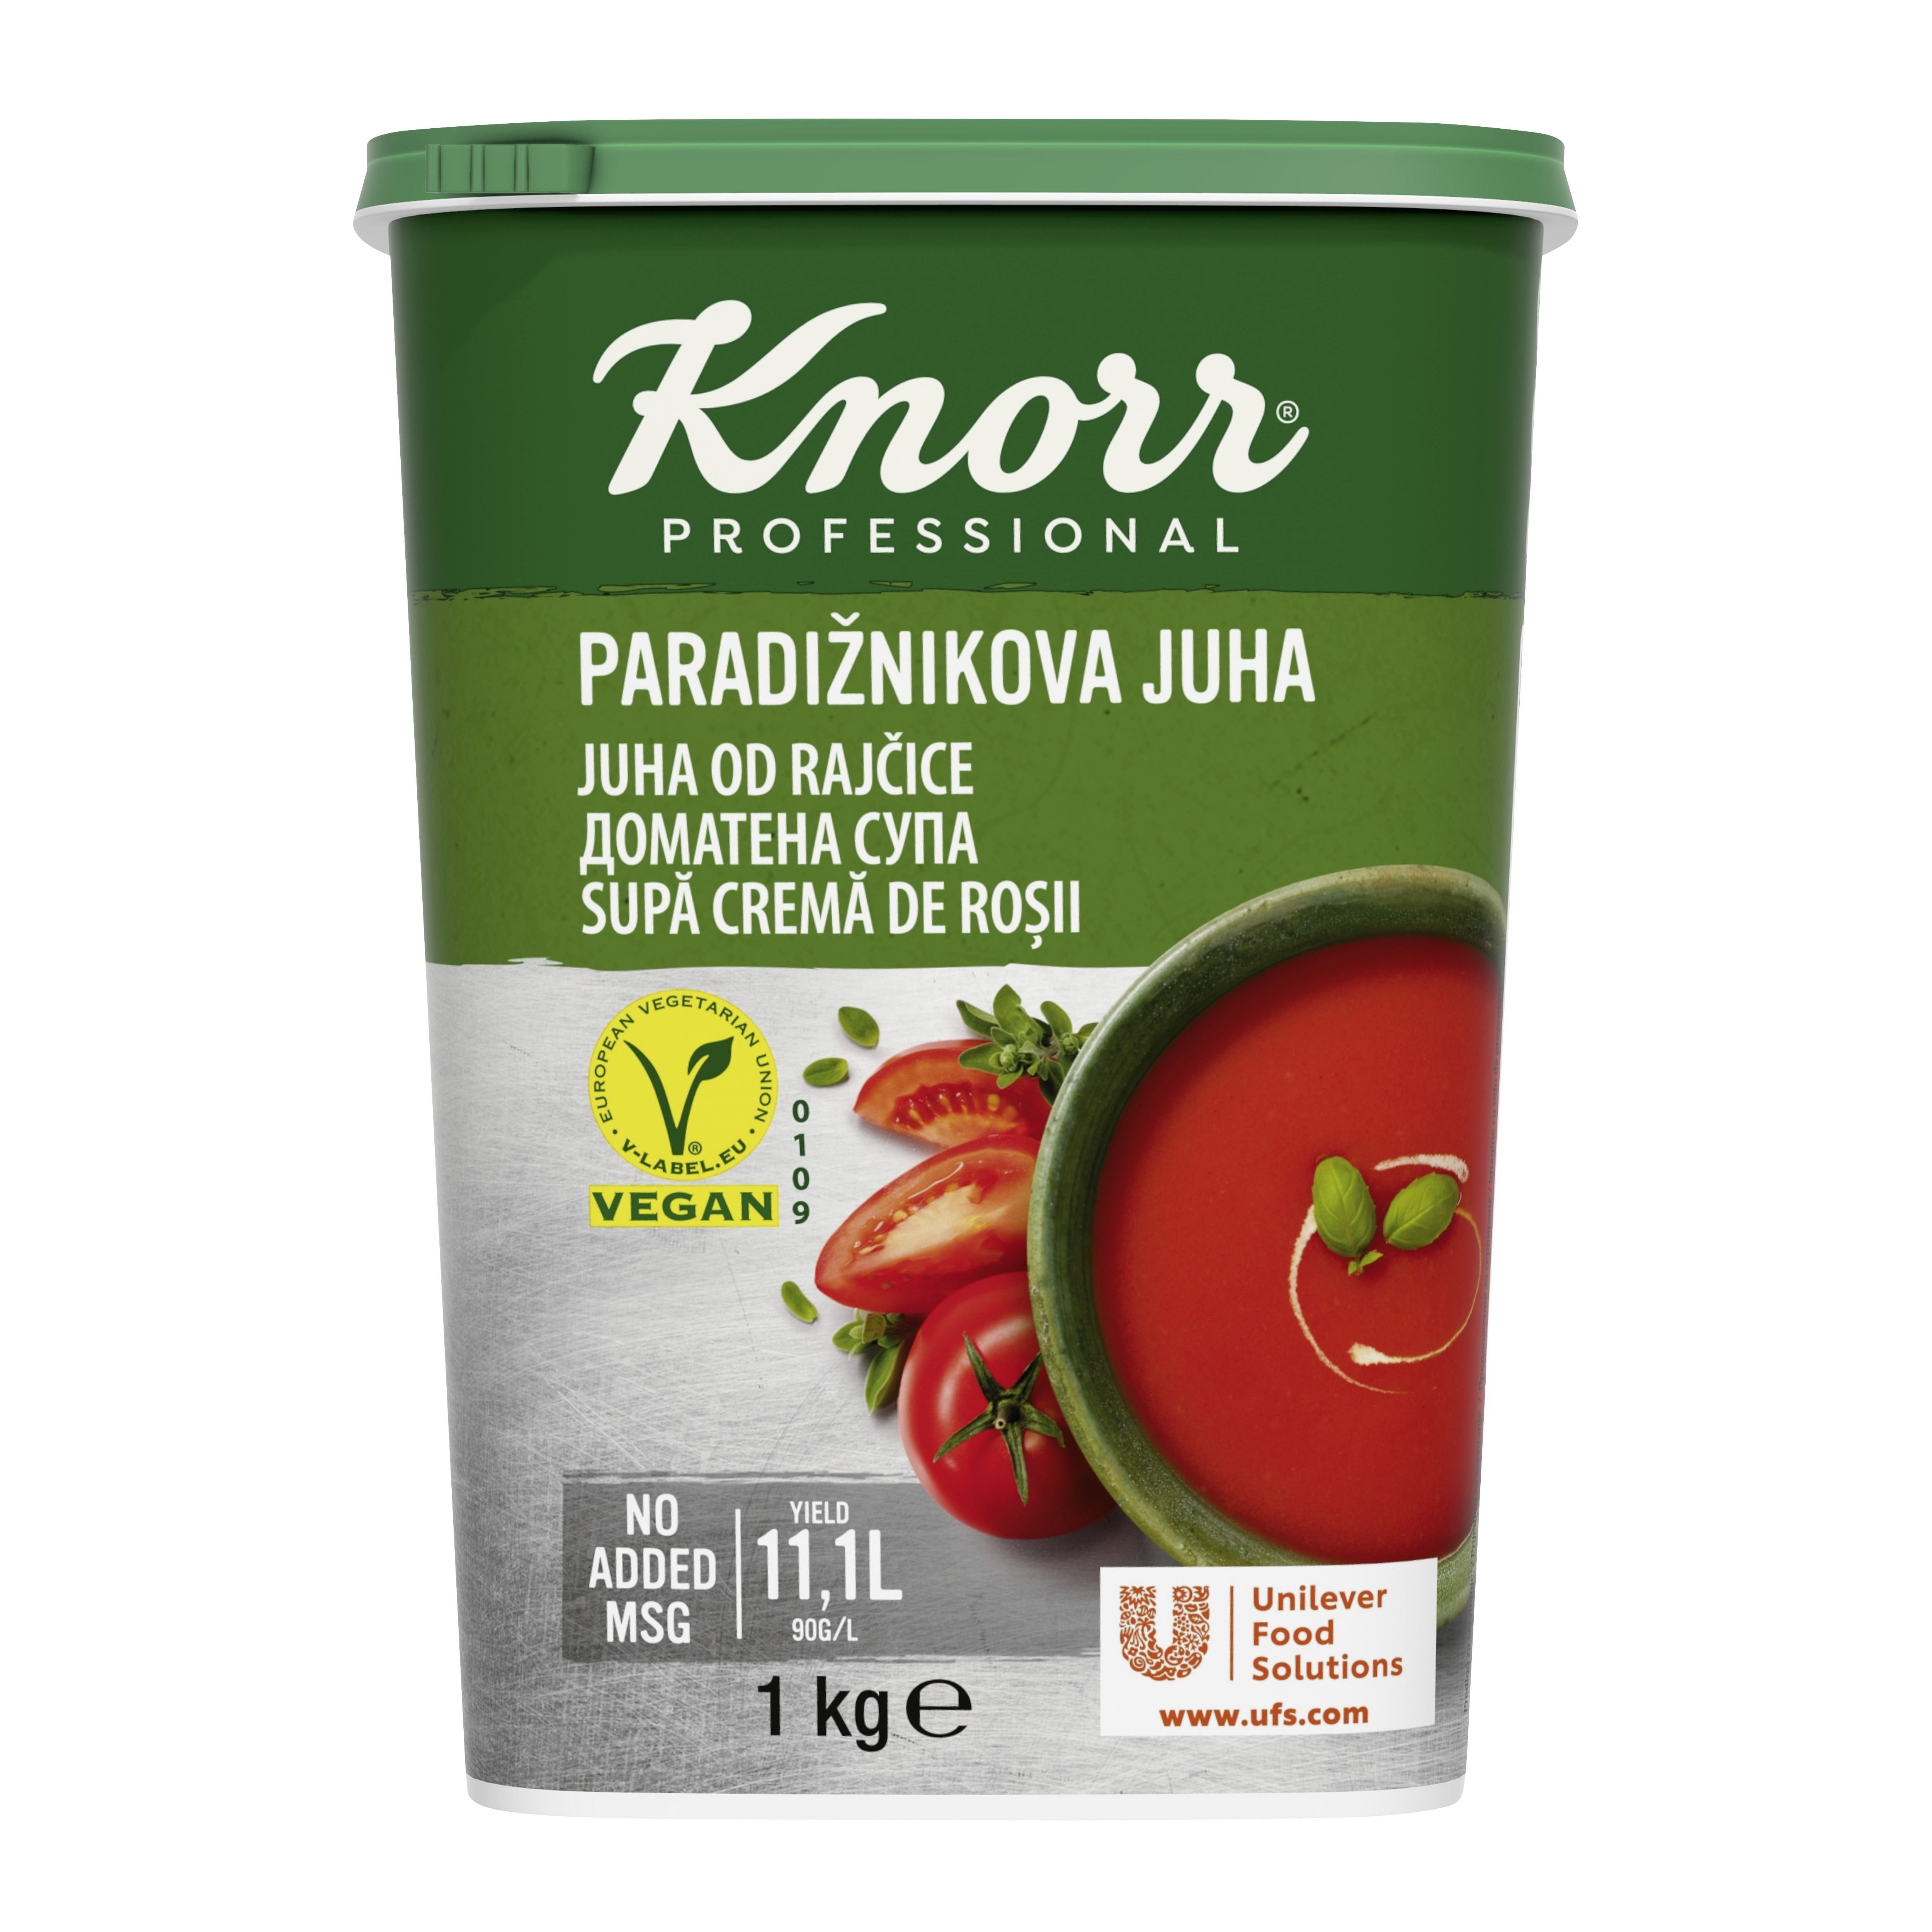 Knorr Juha od rajčice 1 kg